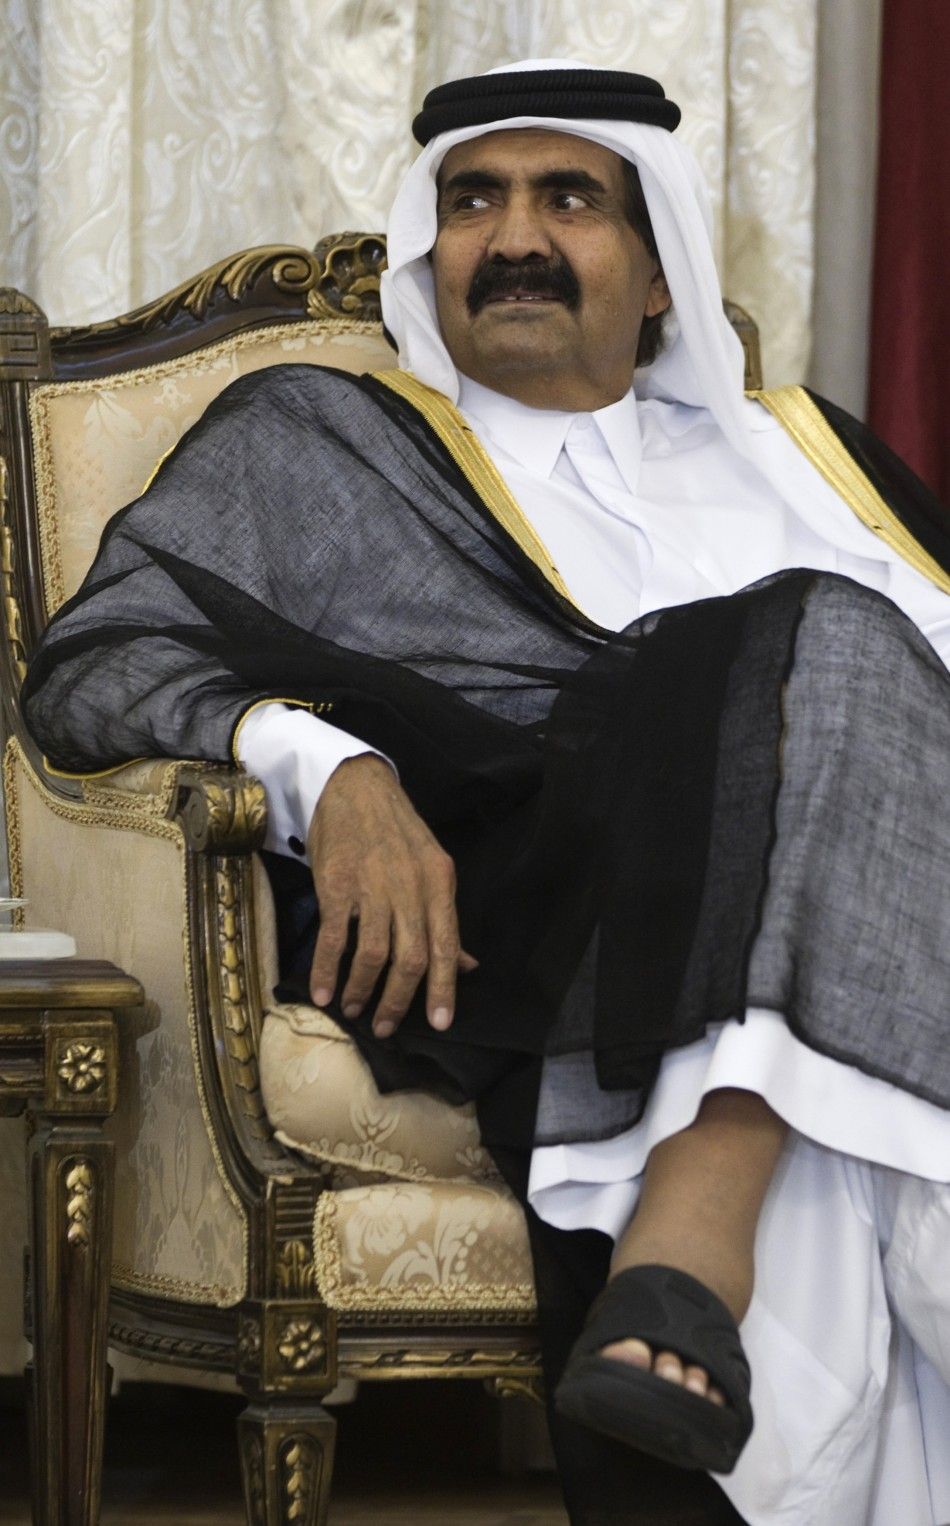 Emir of Qatar Sheikh Hamad bin Khalifa al-Thani